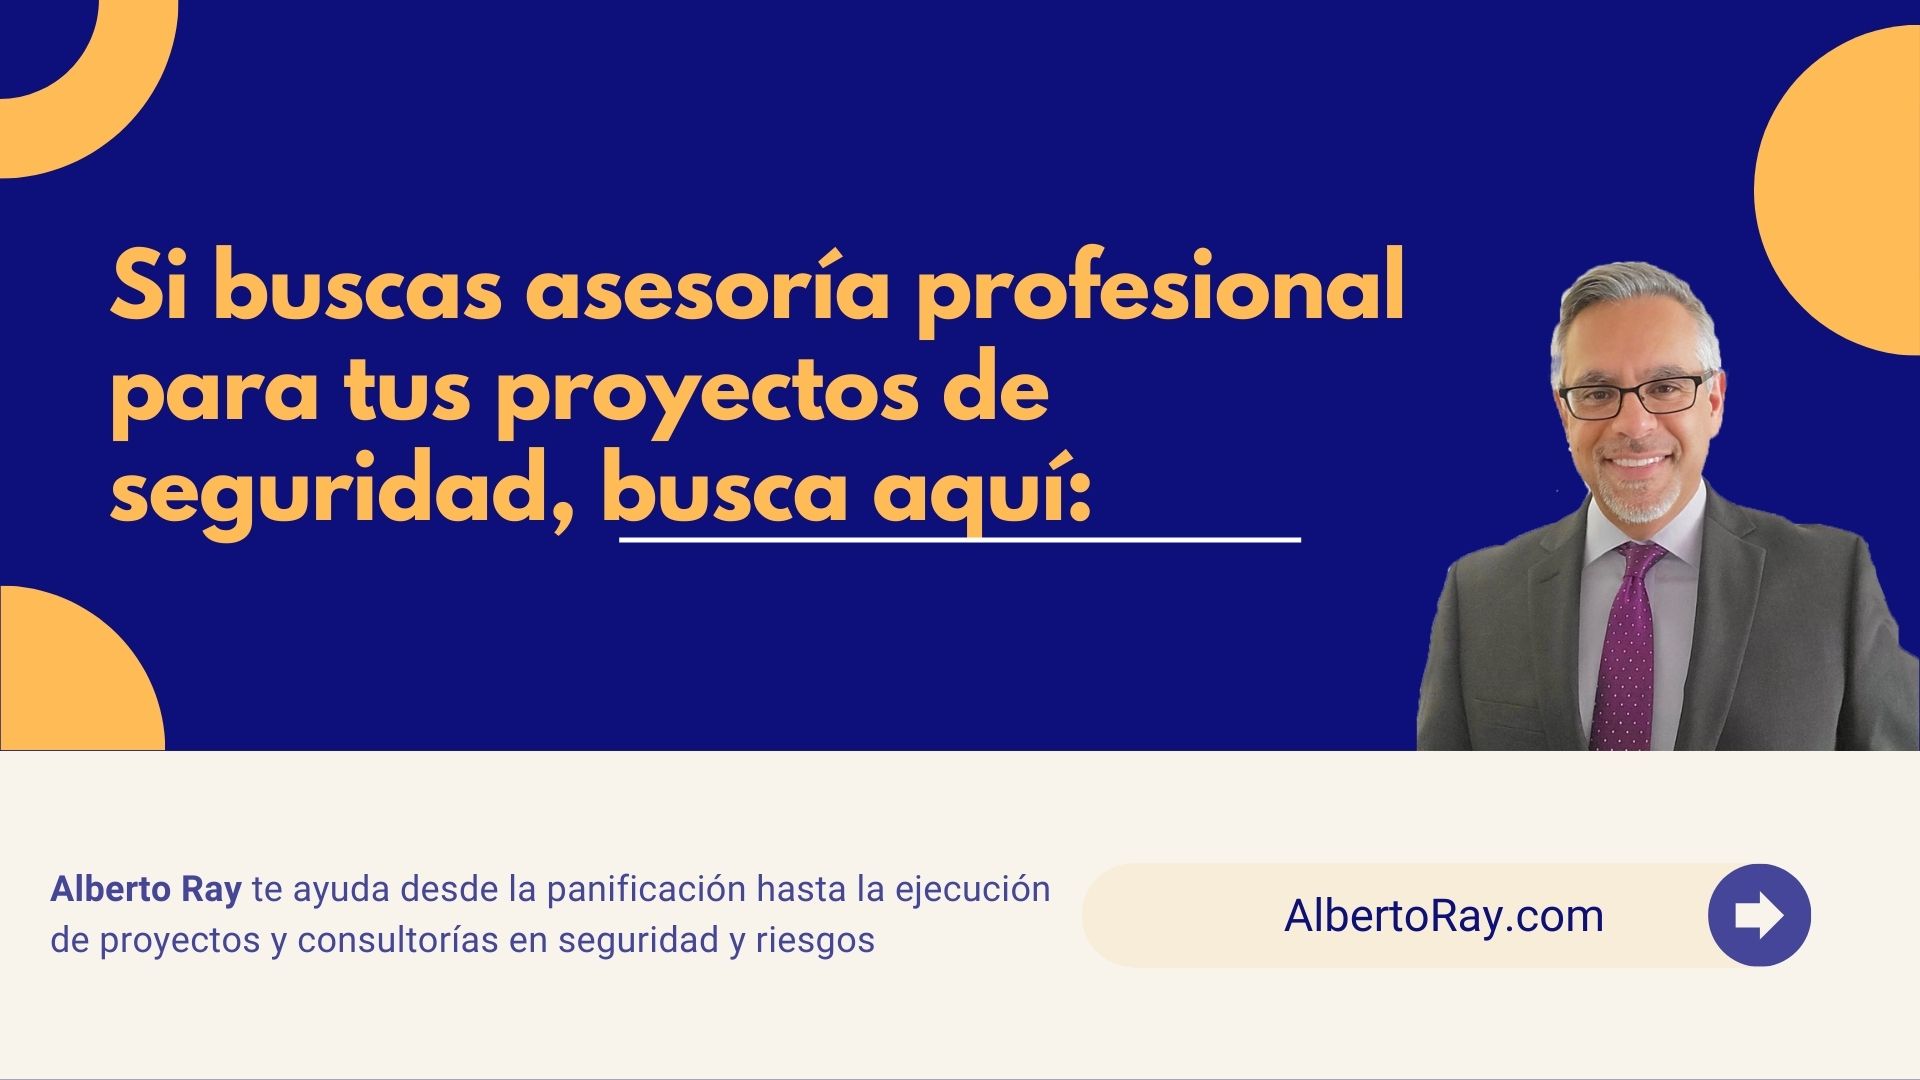 Alberto Ray es uno de los profesionales de la seguridad más reconocidos en América Latina